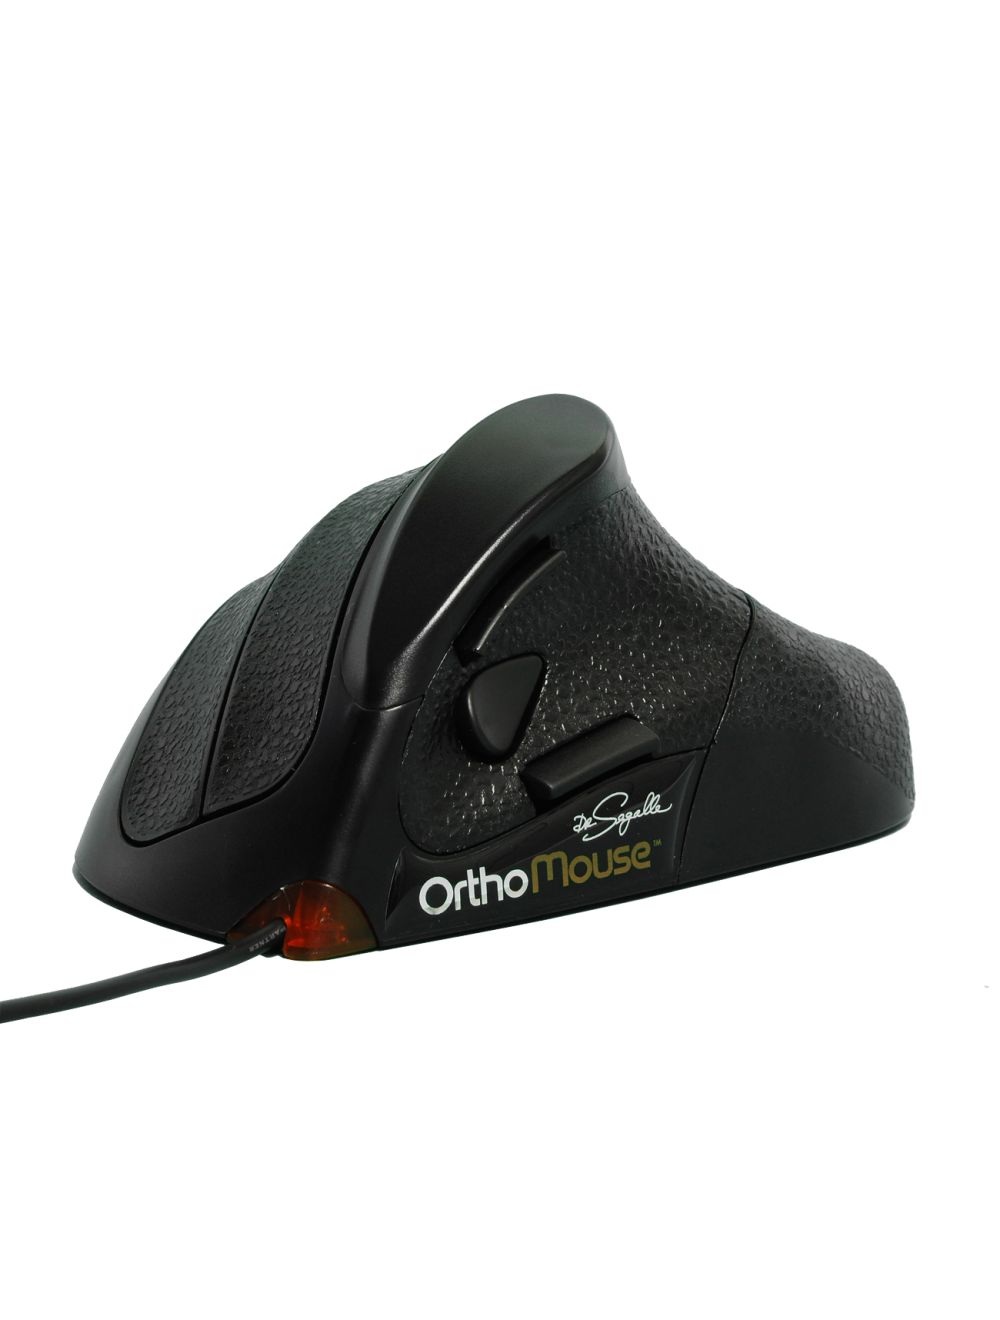 Orthomouse, il mouse ergonomico di Orthovia